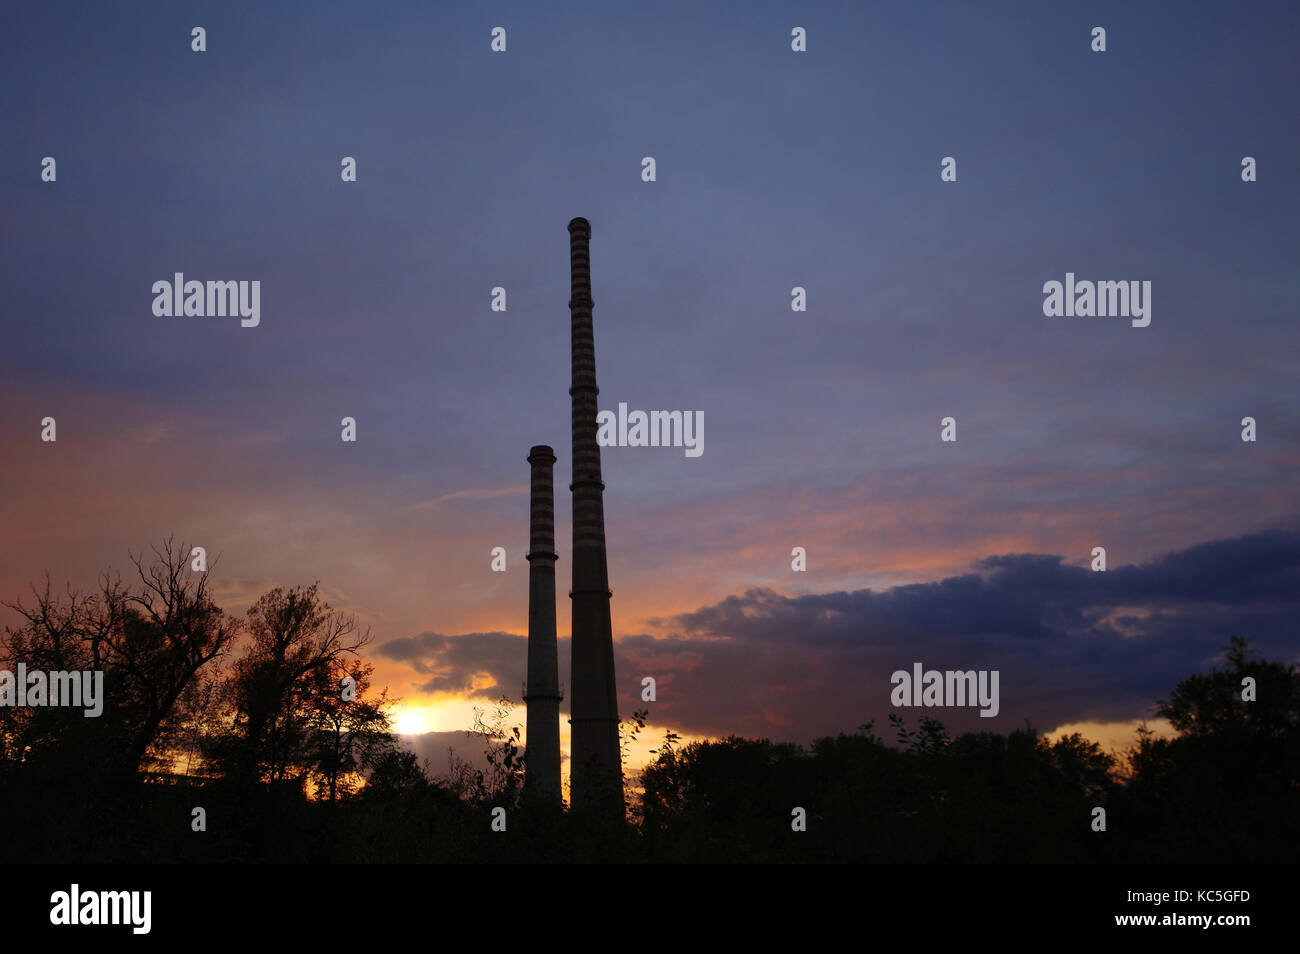 Alte Beton hohe Schornsteine an bewölkten Sonnenuntergang Himmel. Ursache der globalen Erwärmung. Stockfoto